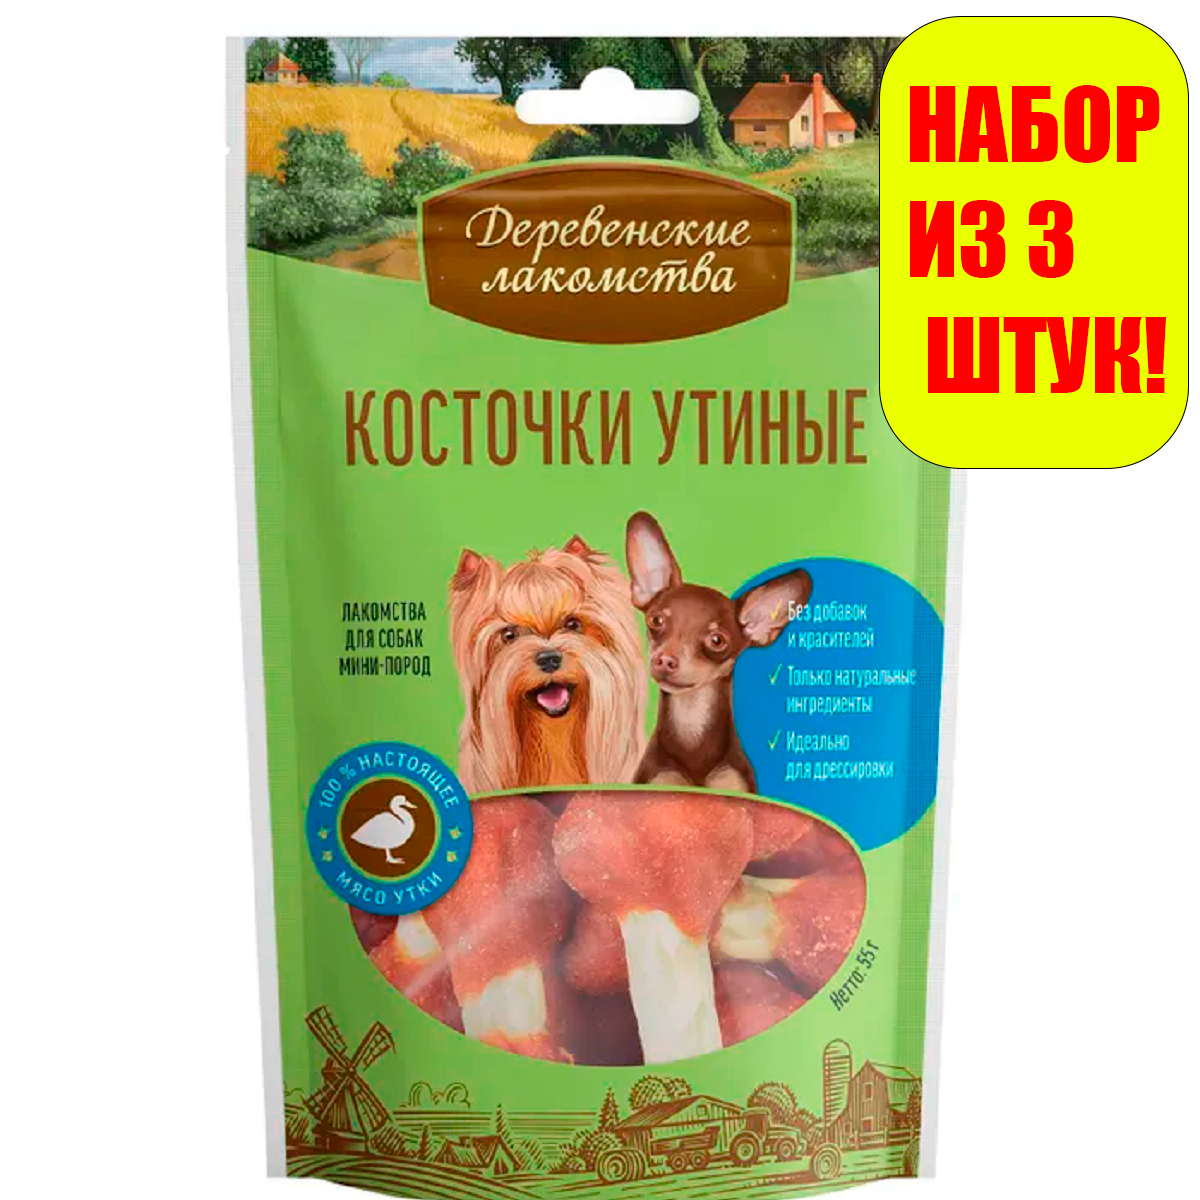 Деревенские лакомства Косточки утиные для собак мини-пород 55г(3 штуки)